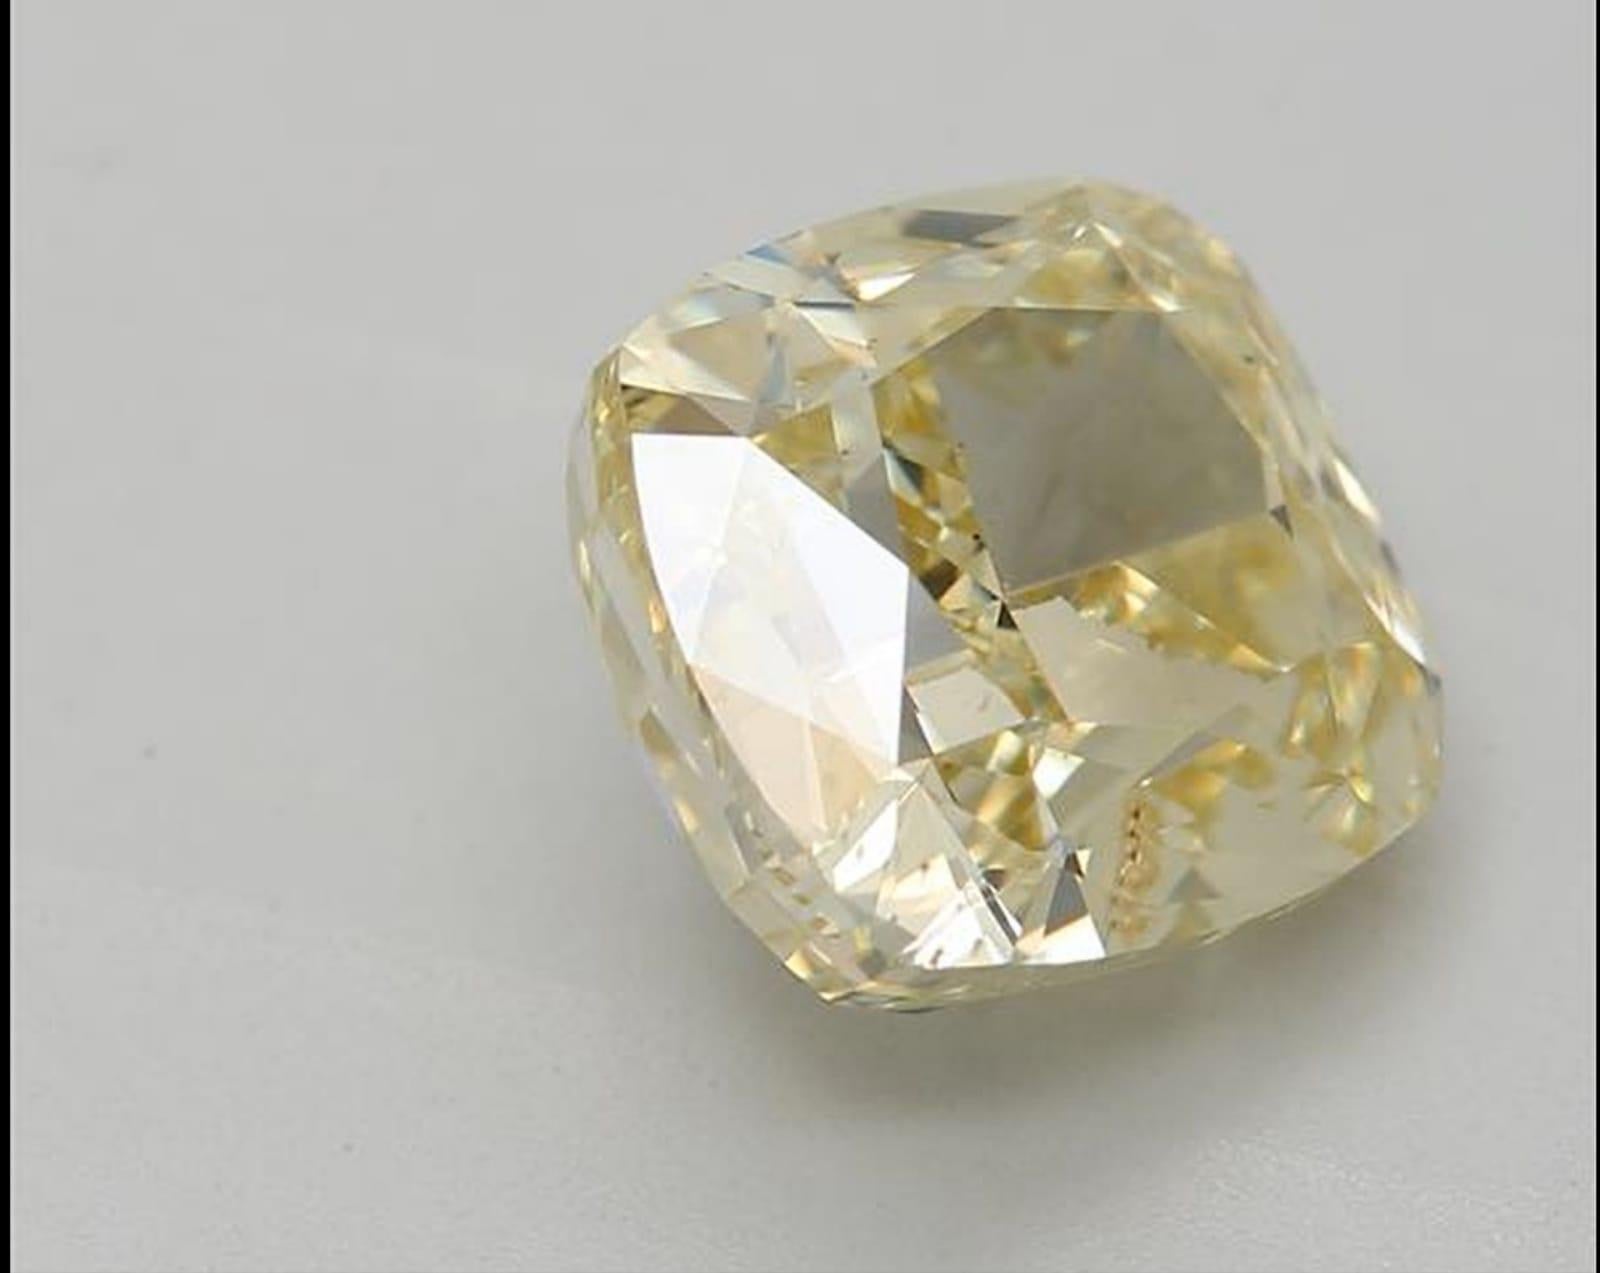 ***DIAMANT DE COULEUR NATURELLE À 100 %***

Détails du diamant

➛ Forme : Coussin
Grade de couleur : Jaune verdâtre brunâtre
Carat : 2.50
Clarté : VS2
Certifié GIA 

CARACTÉRISTIQUES DU DIAMANT

Notre diamant de 2,5 carats est un diamant de grande